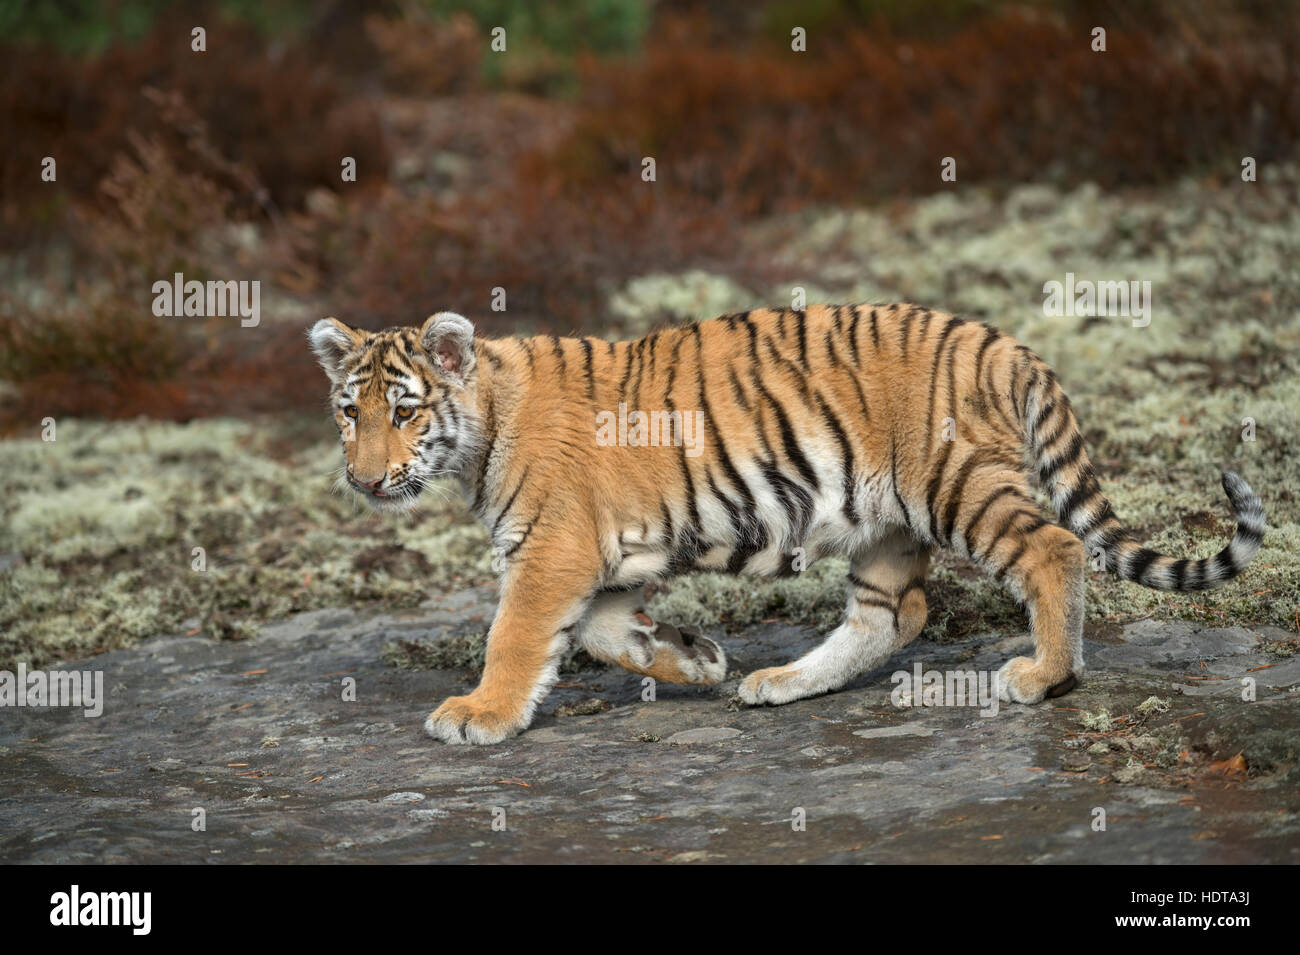 Tigre du Bengale Royal / Koenigstiger ( Panthera tigris ), marcher sur les rochers, regardant attentivement, corps plein vue latérale, jeune animal, lumière douce. Banque D'Images